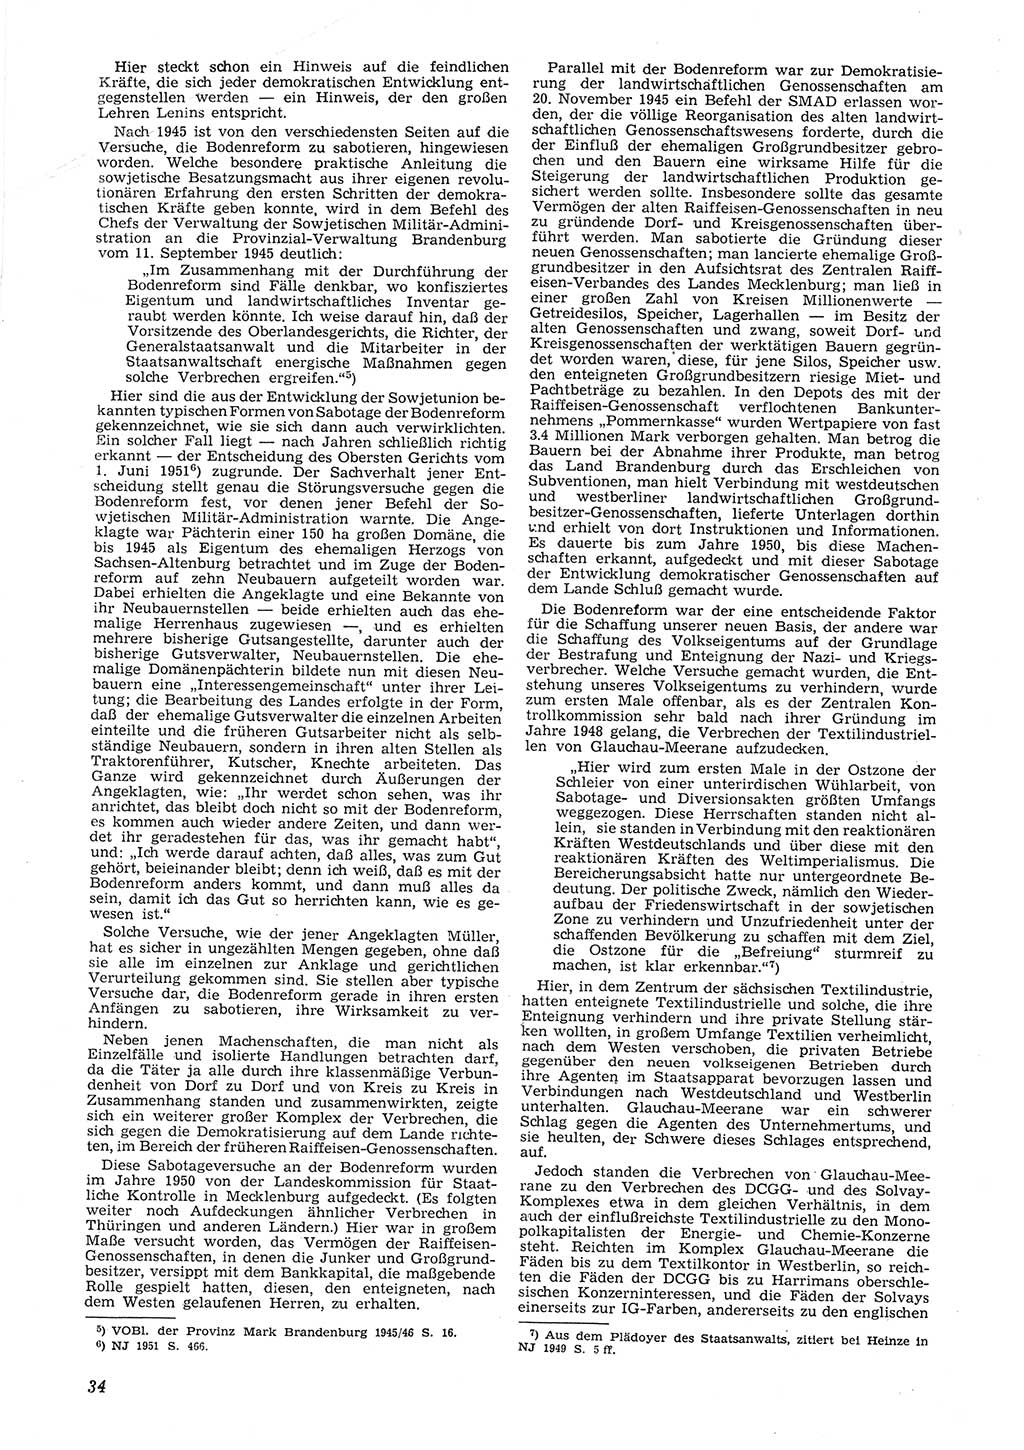 Neue Justiz (NJ), Zeitschrift für Recht und Rechtswissenschaft [Deutsche Demokratische Republik (DDR)], 8. Jahrgang 1954, Seite 34 (NJ DDR 1954, S. 34)